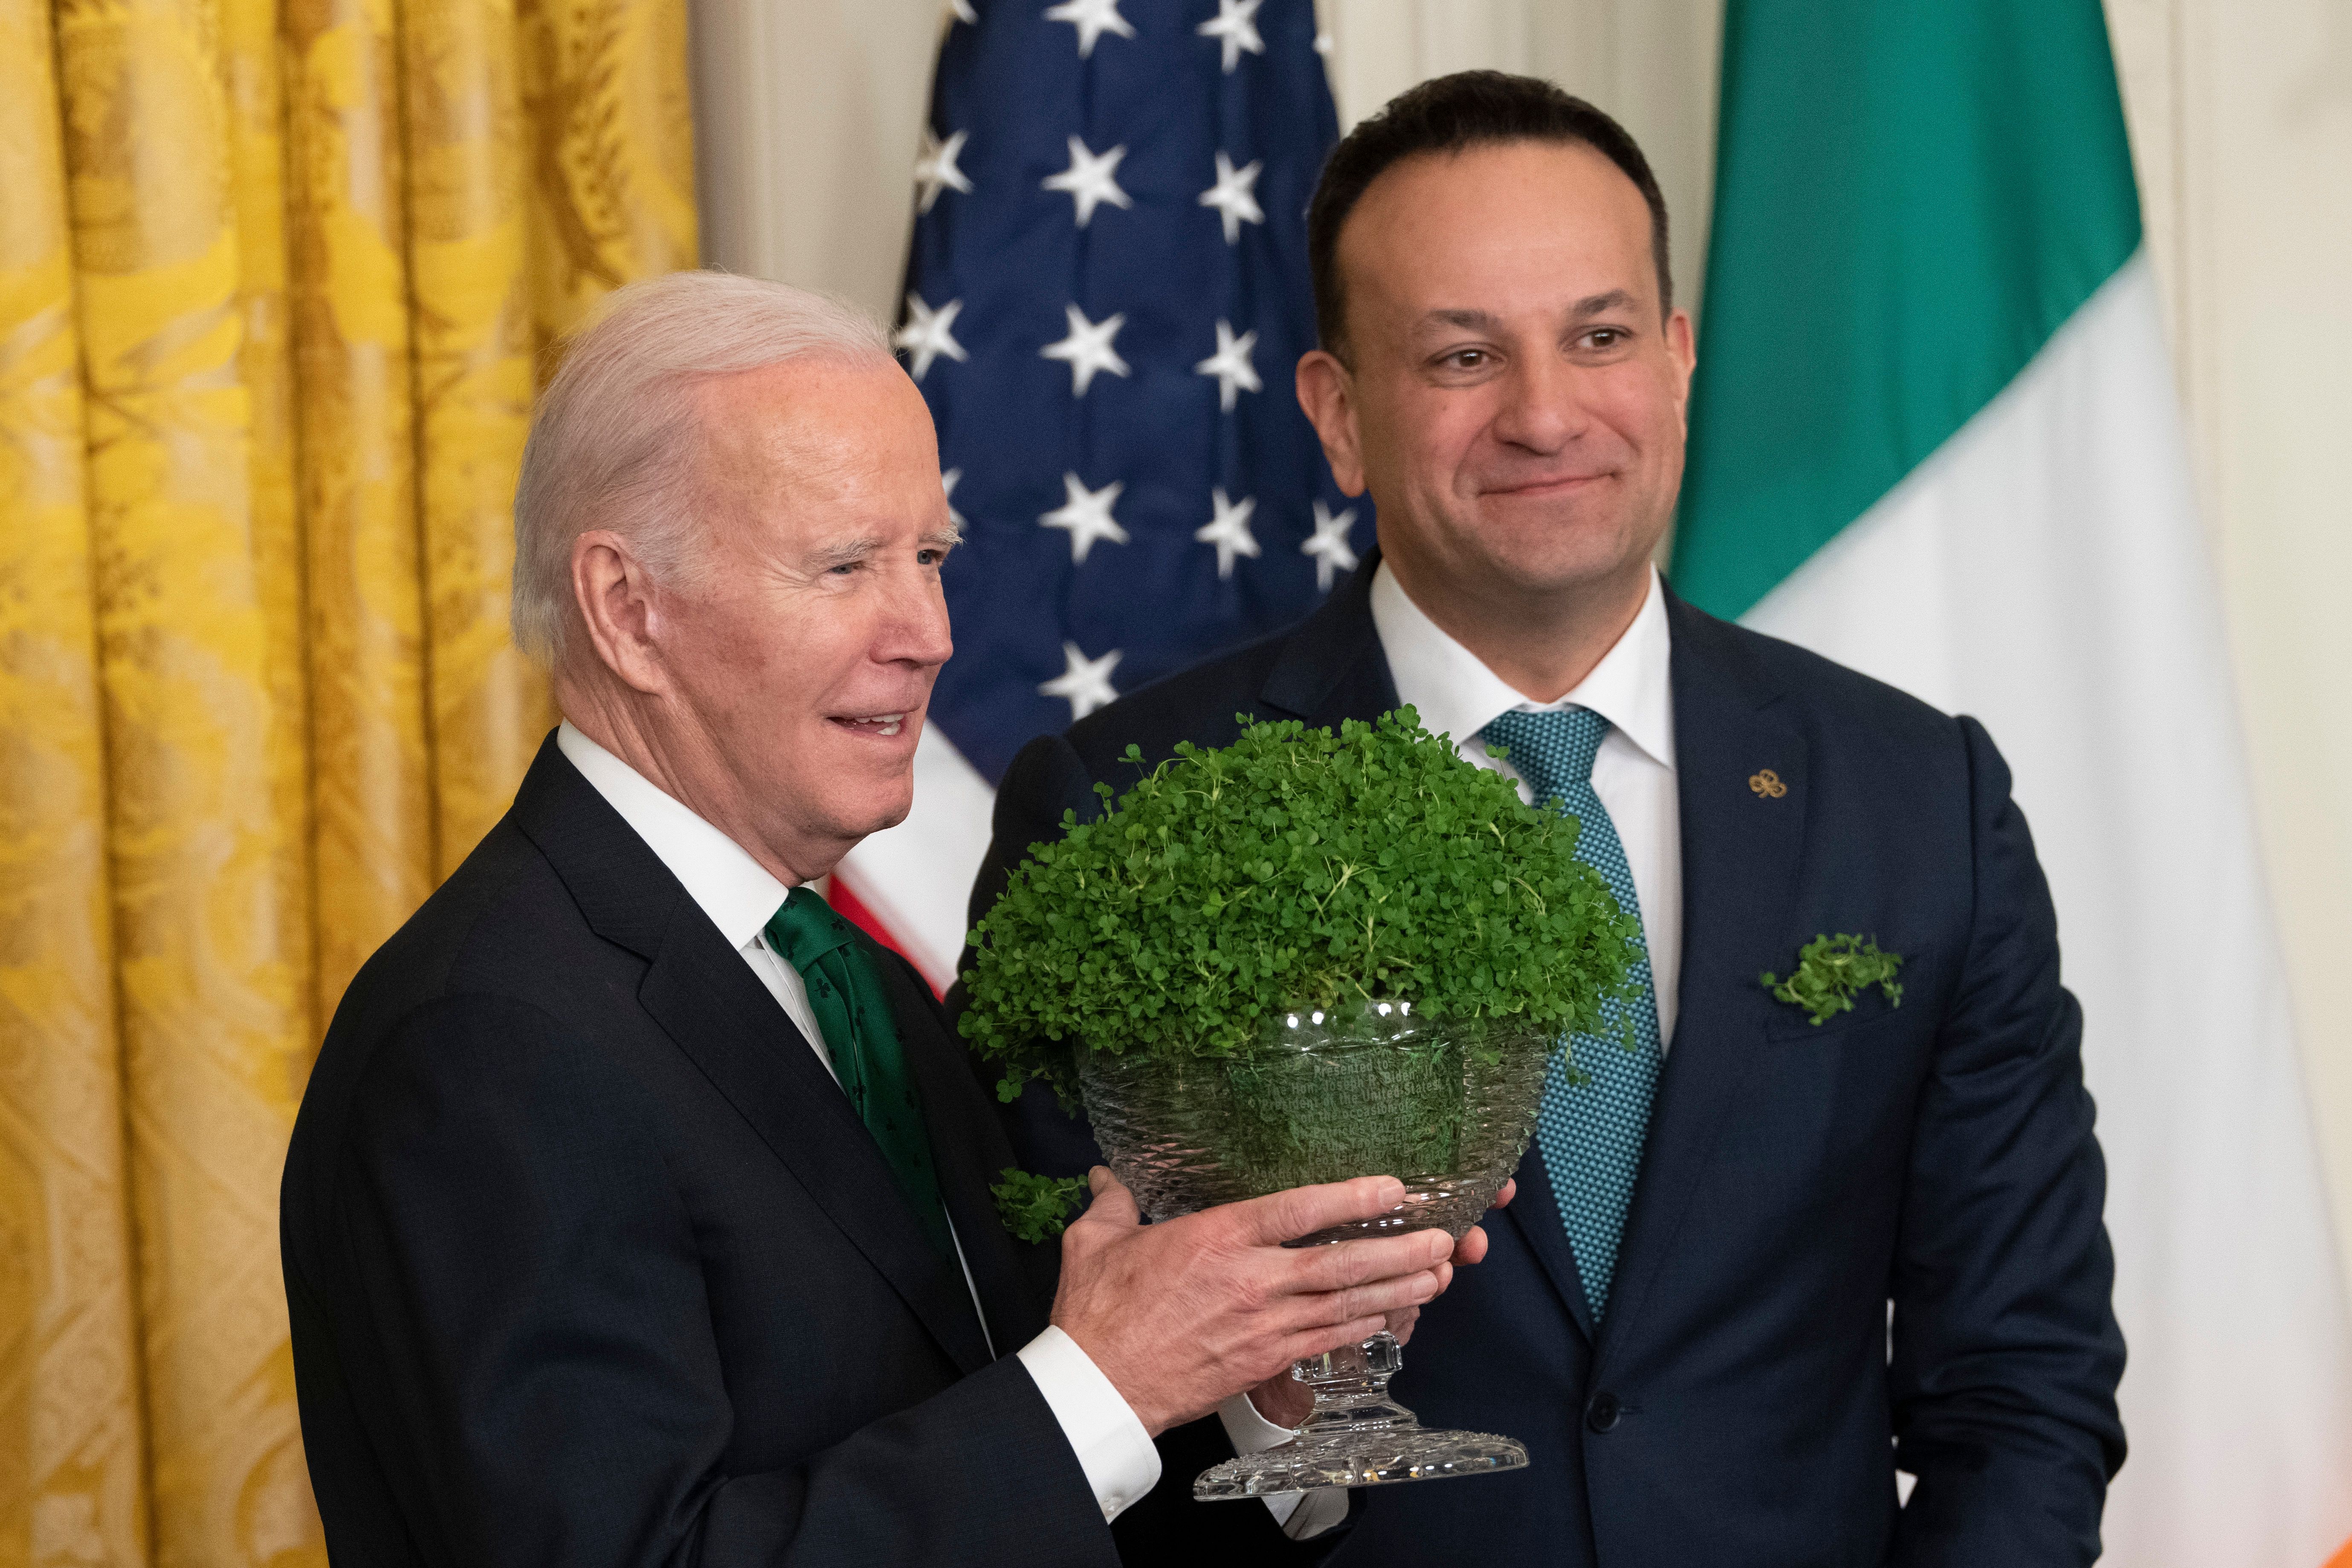 Eine weitere Tradition zum St. Patrick's Day: Jedes Jahr überreicht der irische Regierungschef dem US-Amerikanischen Präsident eine Schüssel mit Kleeblättern.